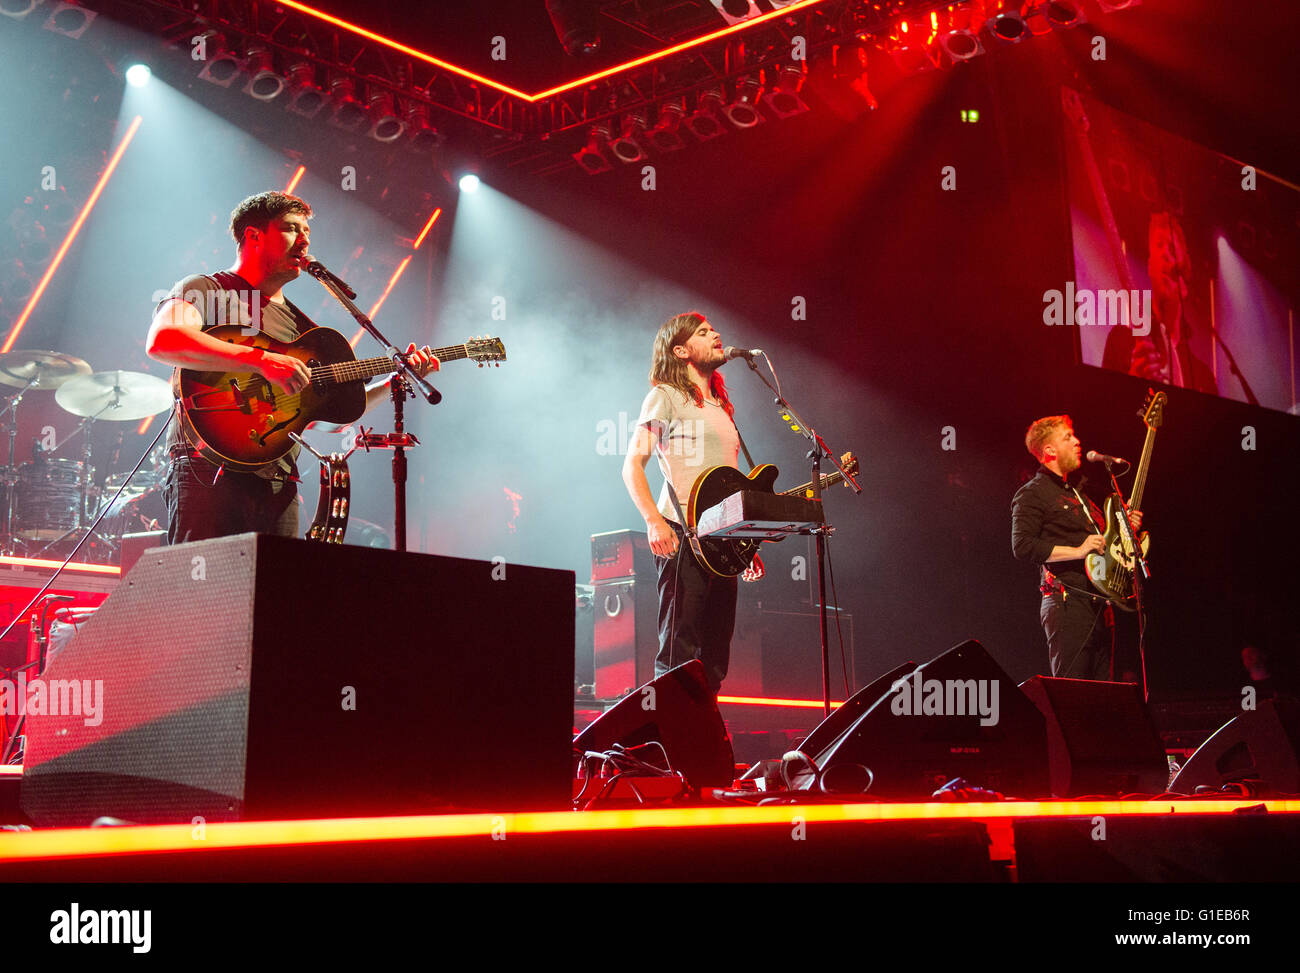 Hamburgo, Alemania. El 13 de mayo, 2016. La banda Mumford & Sons realizando en Barclaycard Arena en Hamburgo, Alemania, 13 de mayo de 2016. Foto: DANIEL BOCKWOLDT/dpa/Alamy Live News Foto de stock